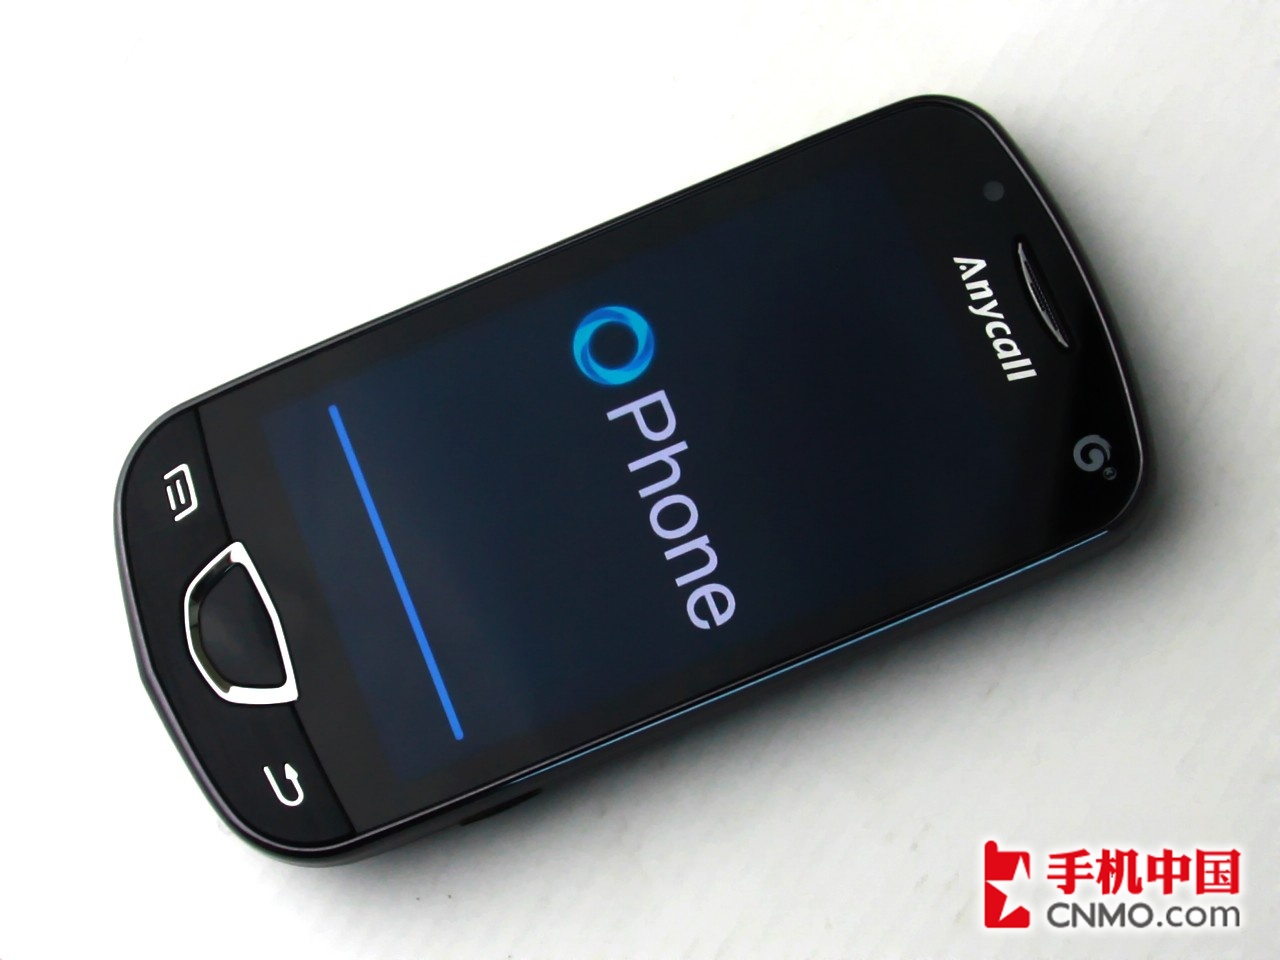 Ophone(OPhone智慧型手機)